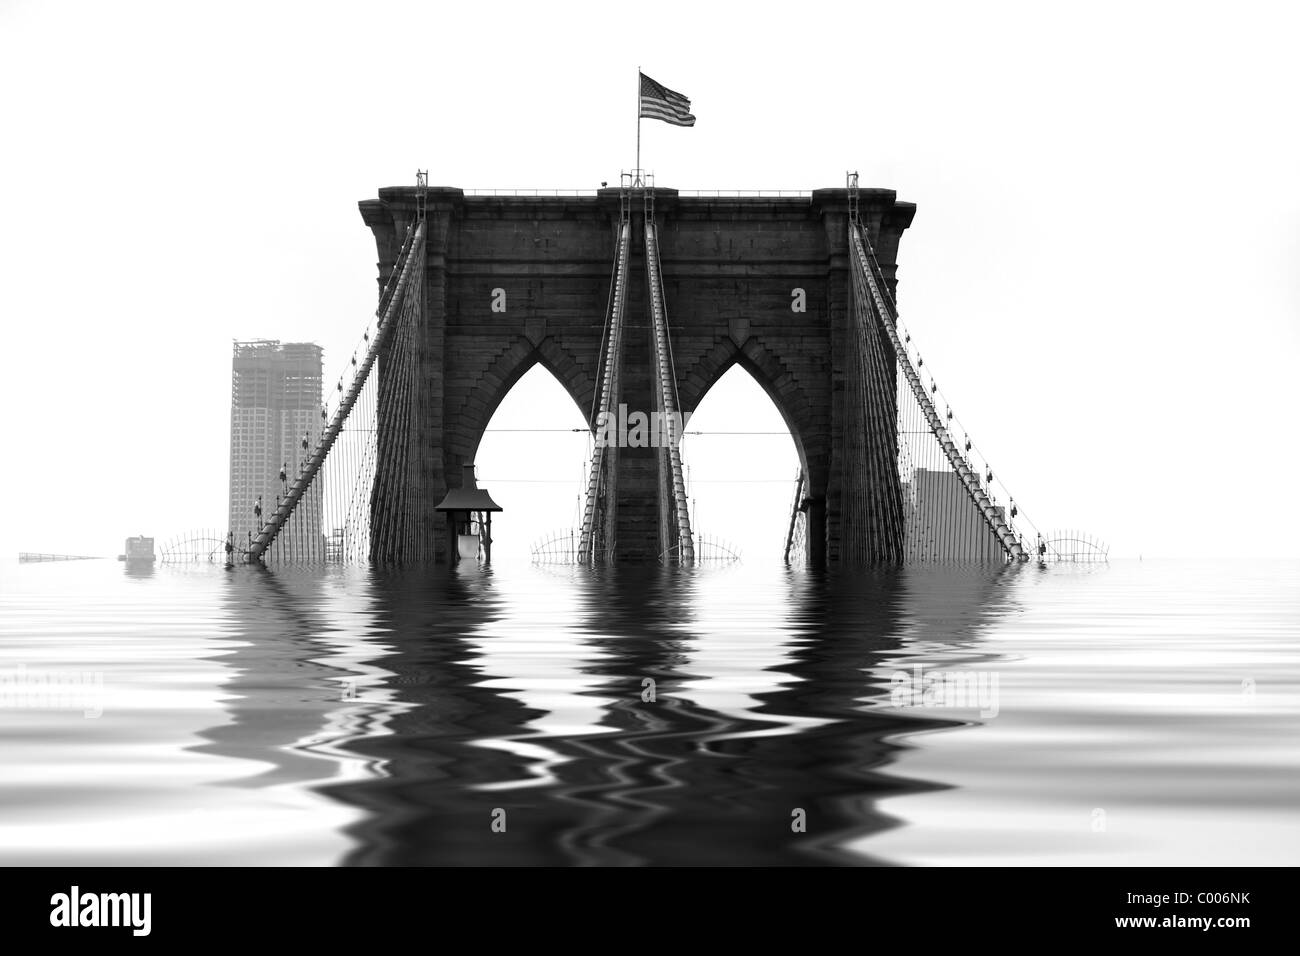 Illustrazione concettuale del Ponte di Brooklyn allagato con acqua a causa di calamità naturali o di riscaldamento globale. Foto Stock